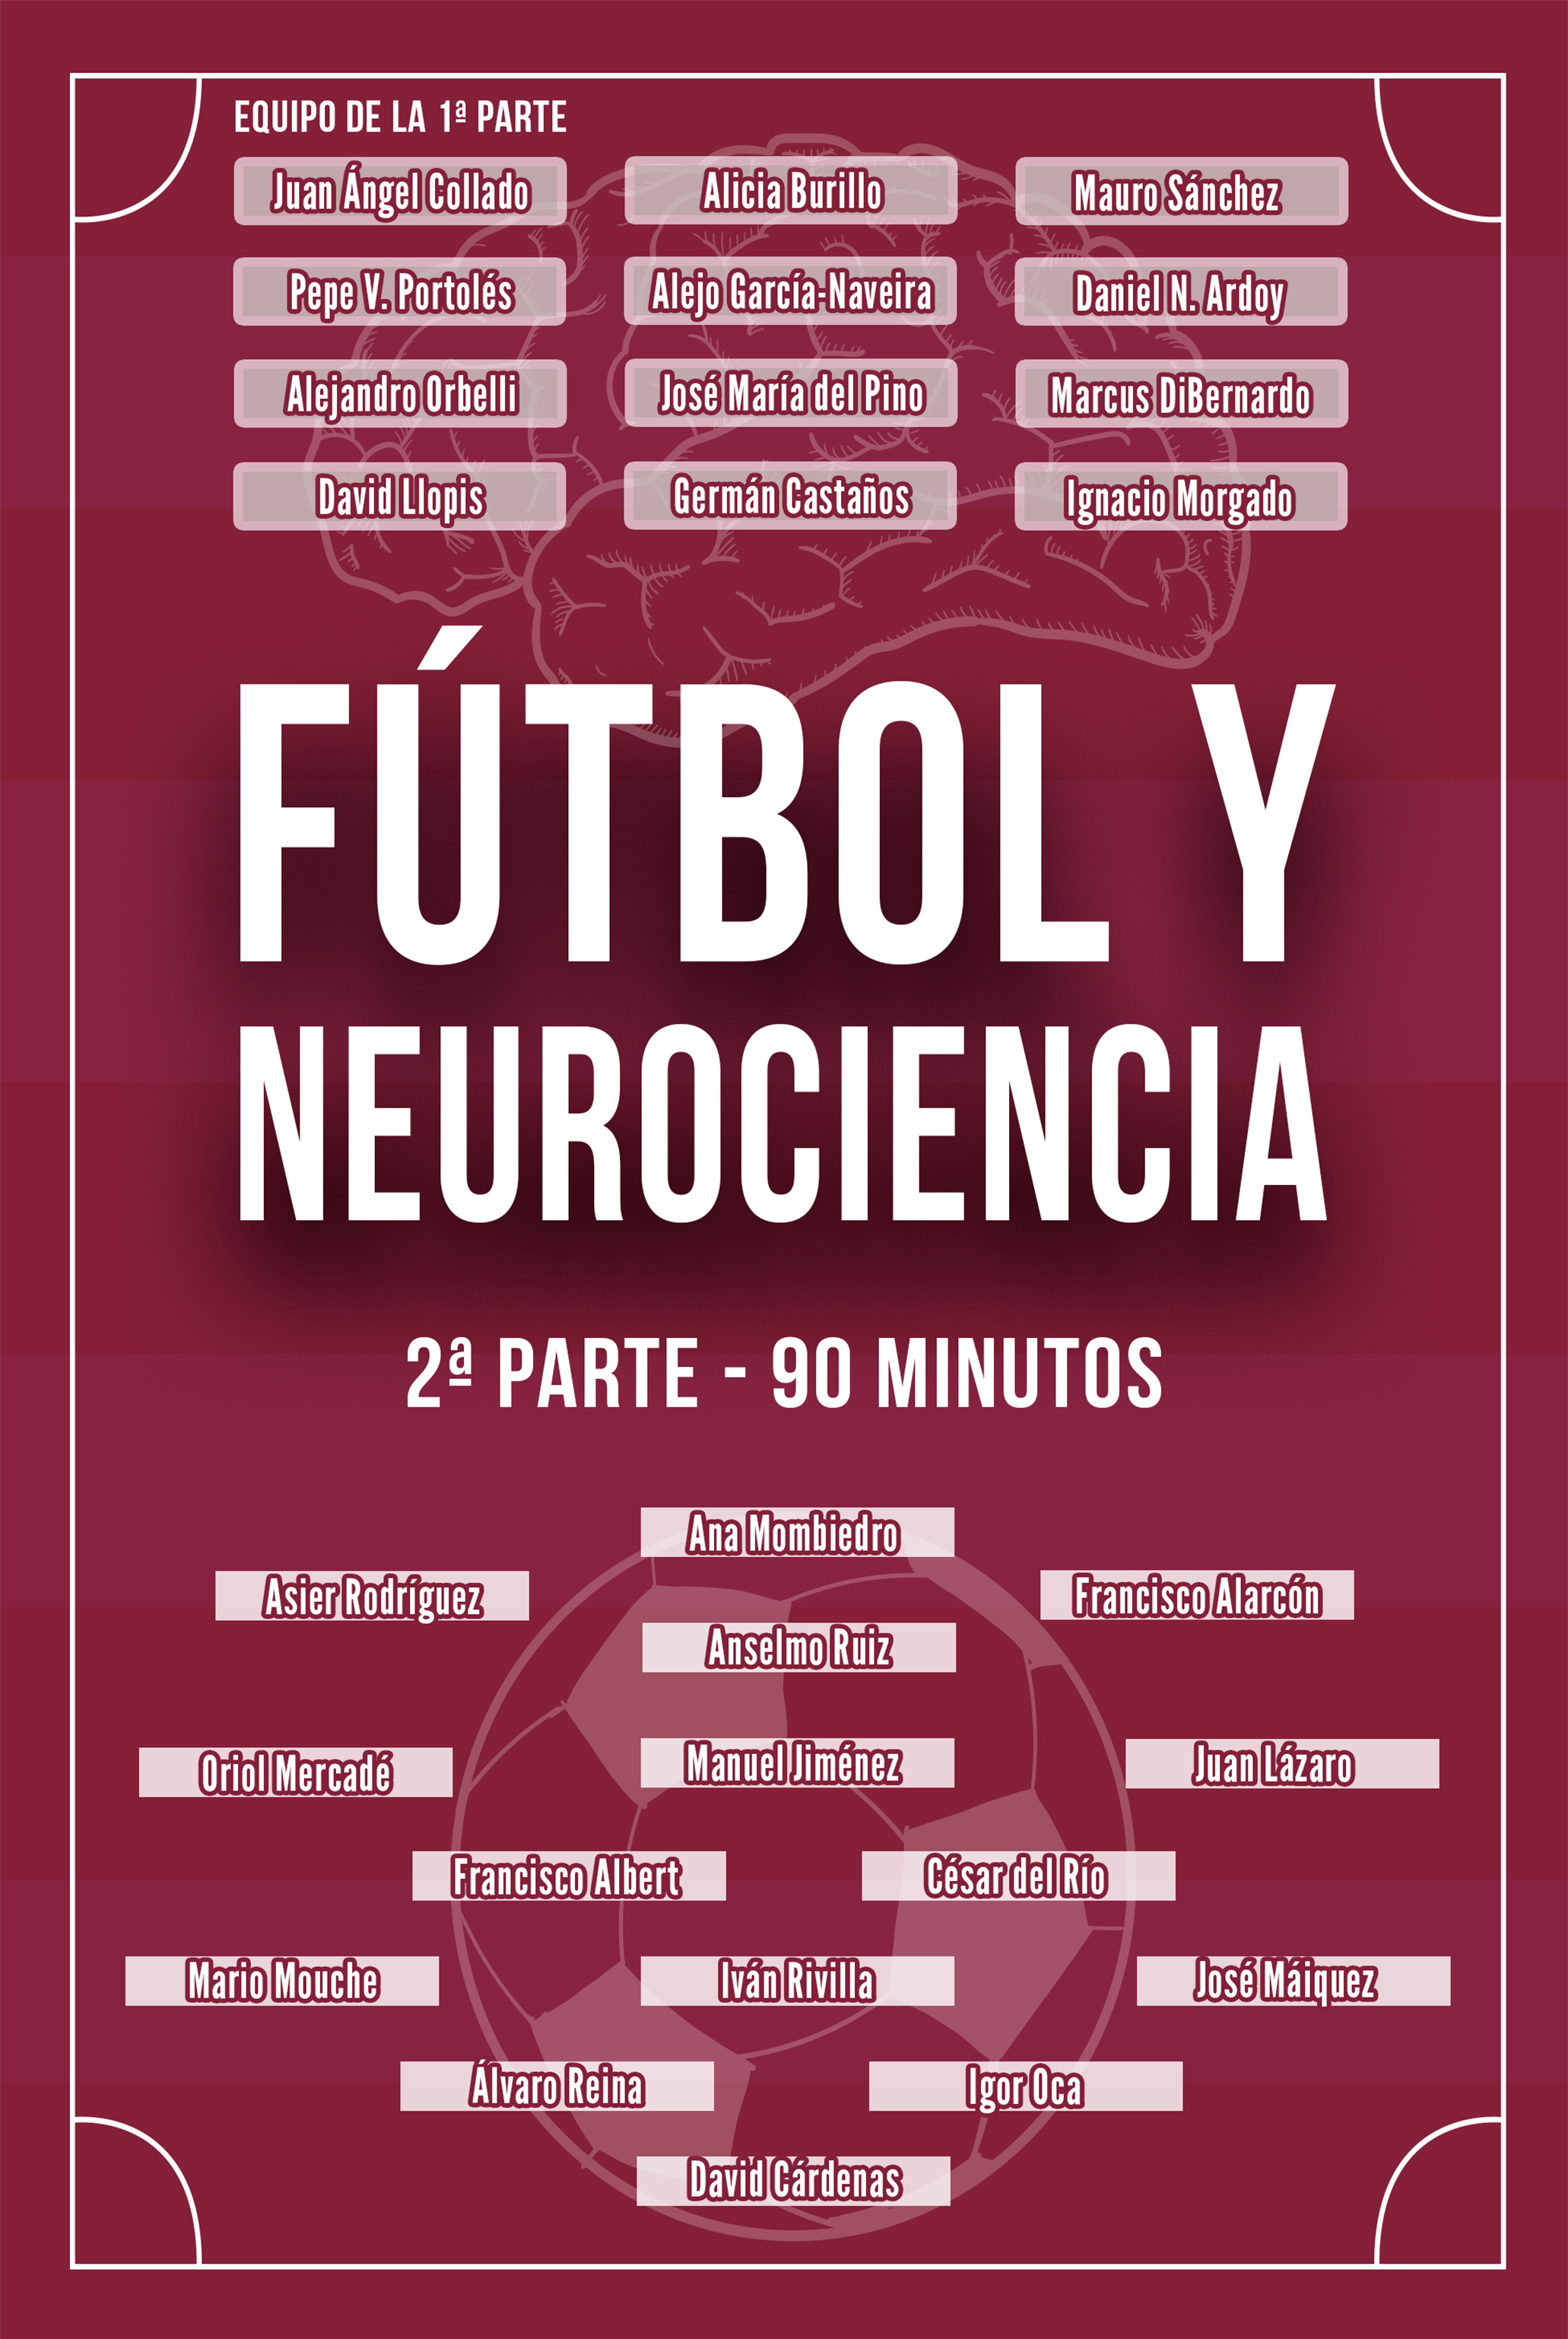 Llibre: Futbol i neurociencia. Capitol: El son i l’esport